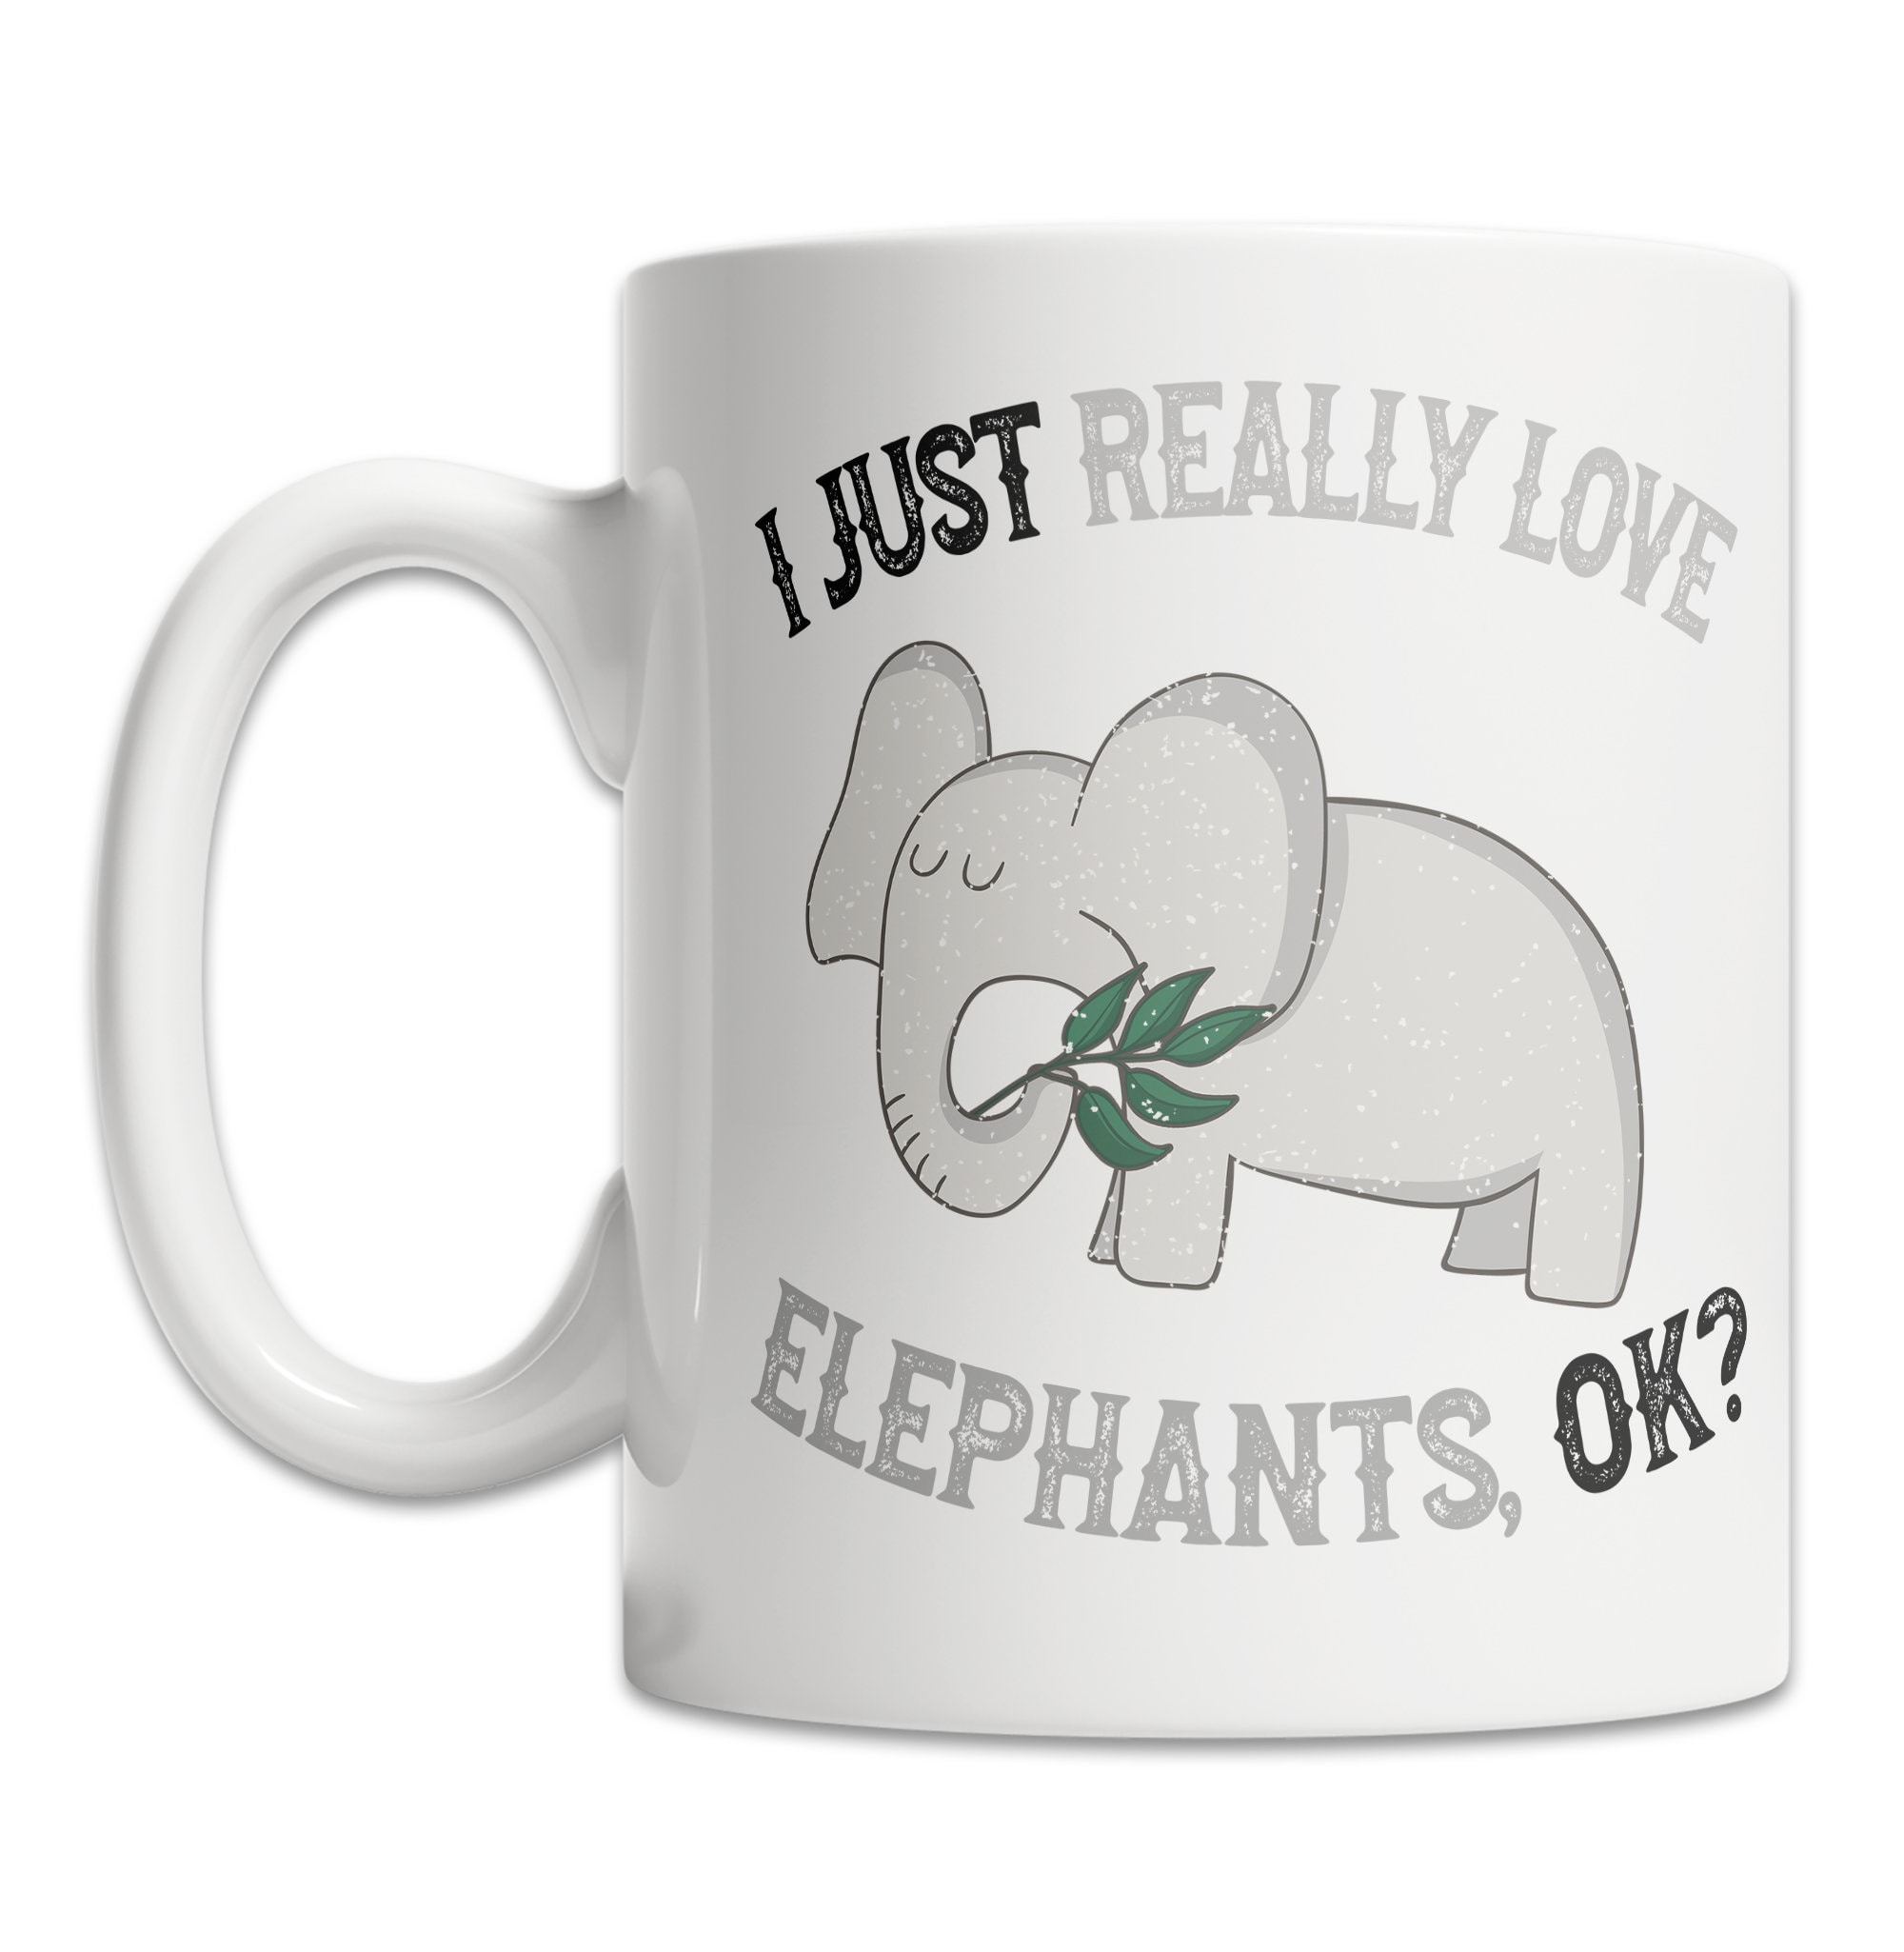 I Love Elephants Mug Cute Elephant Mug for Elephant Lovers